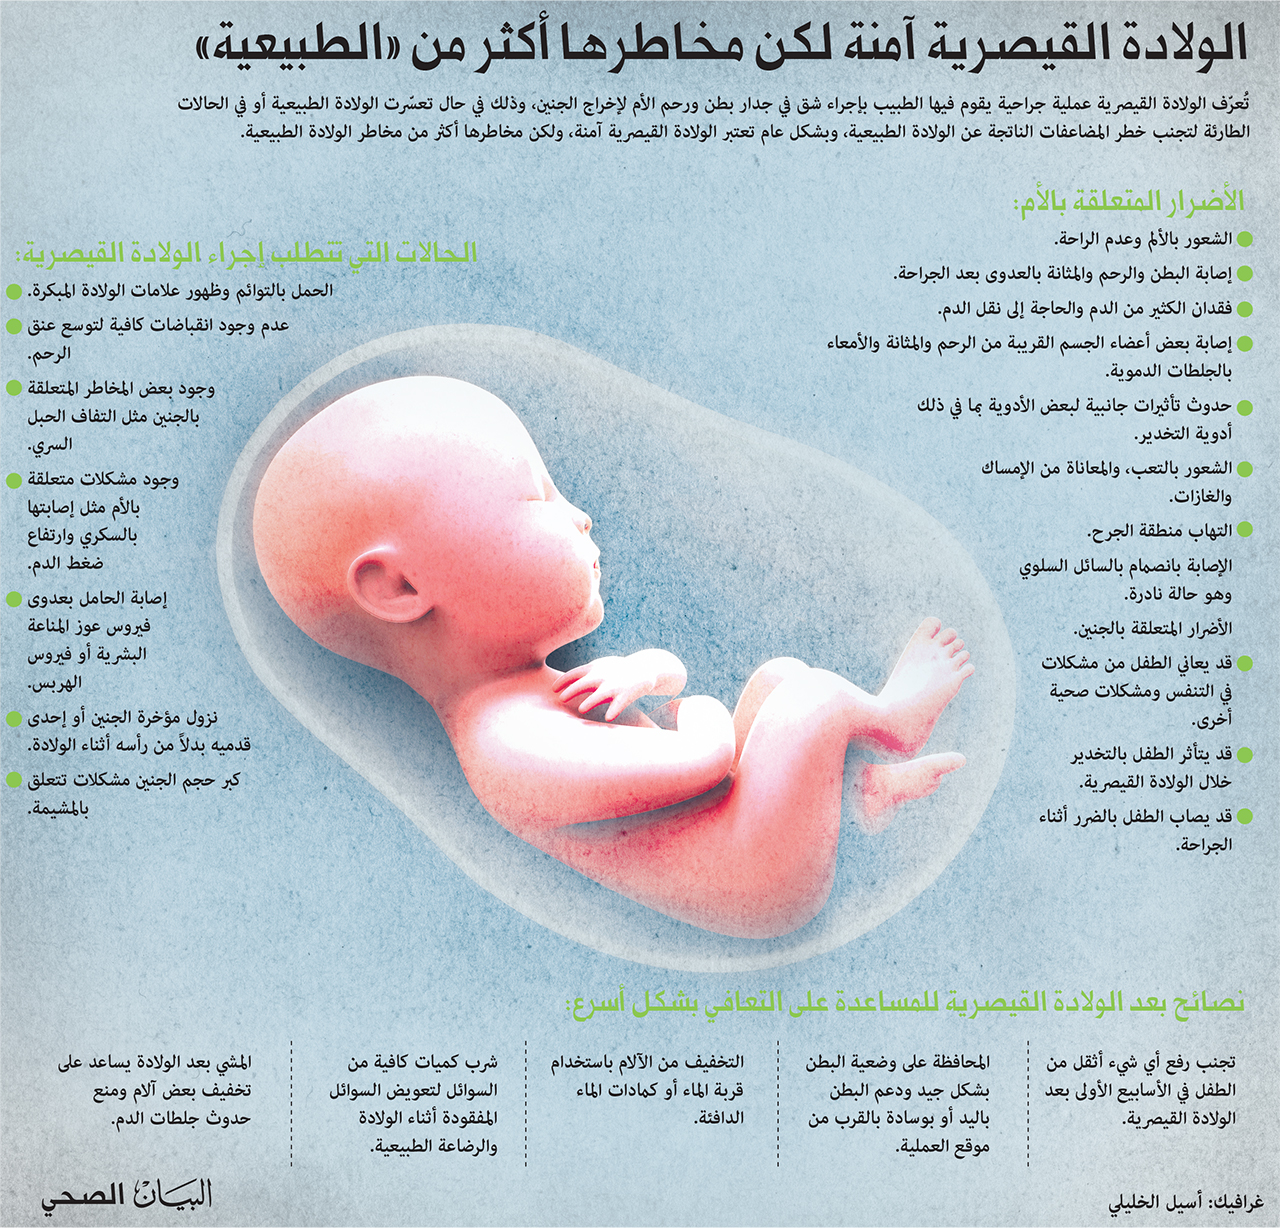 الولادة القيصرية آمنة لكن مخاطر أكثر من الولادة الطبيعية